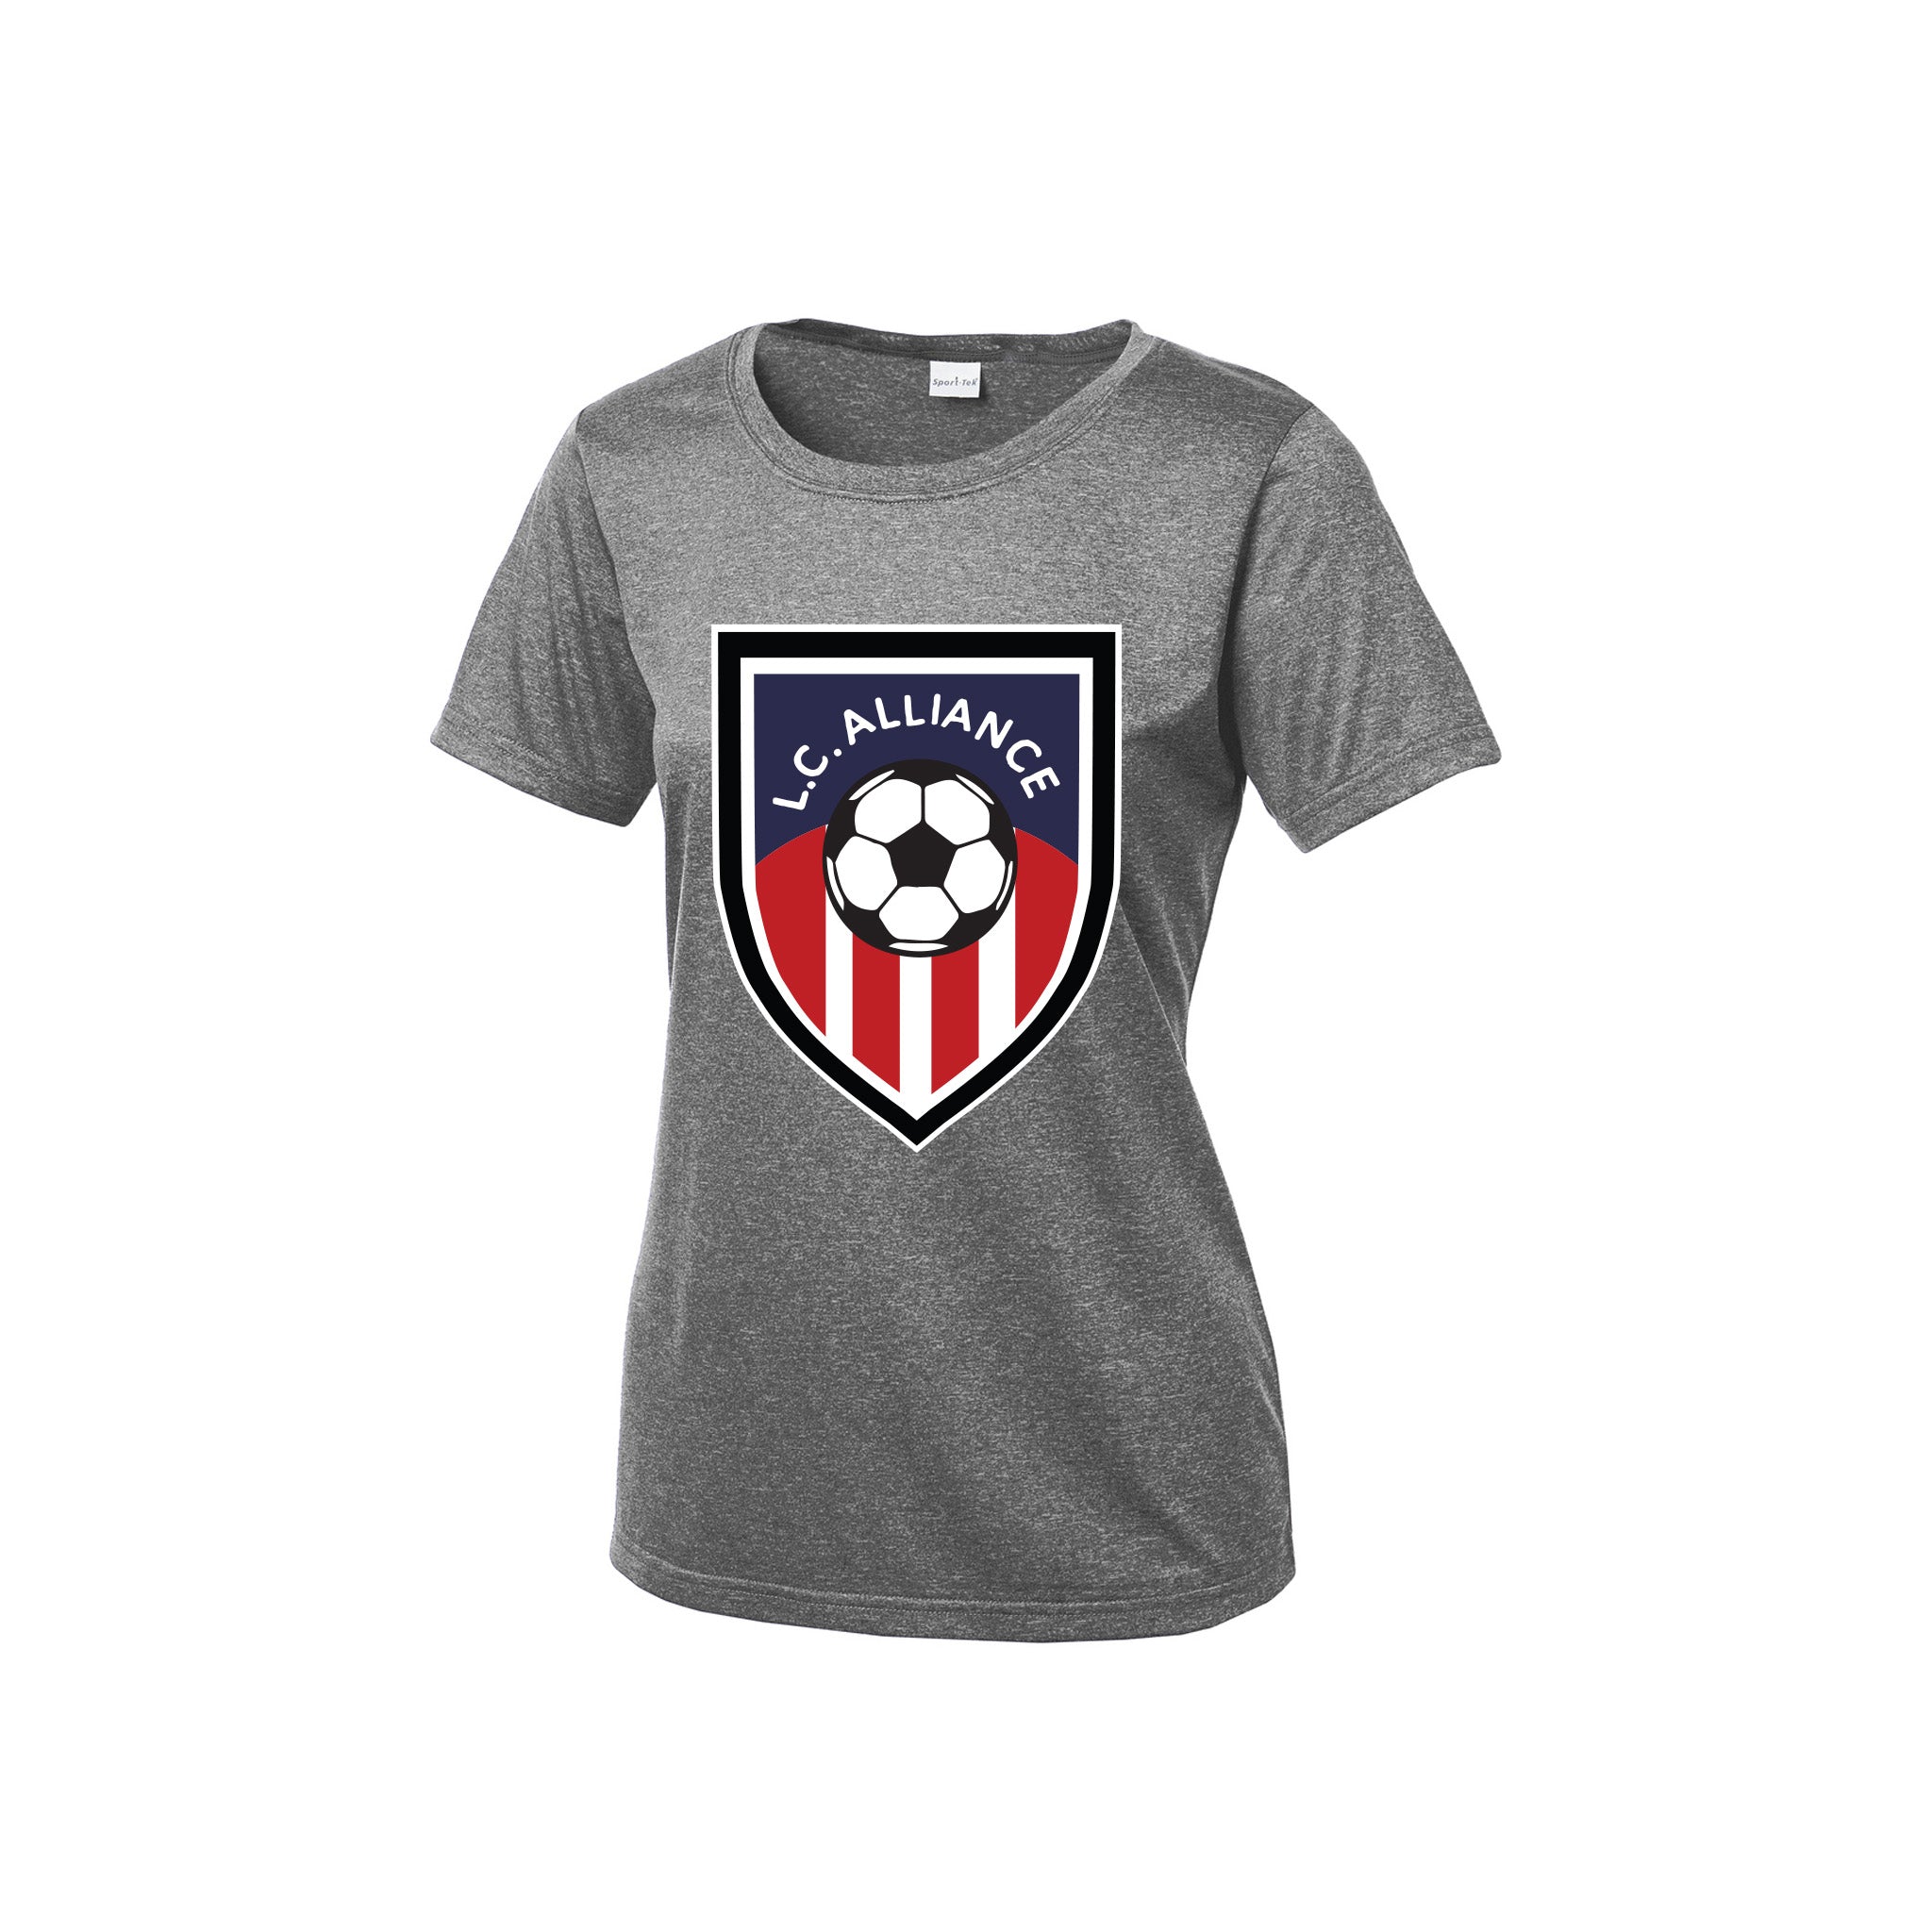 Design Sport-Tek® Ladies Heather Contender™ Scoop Neck T-Shirt